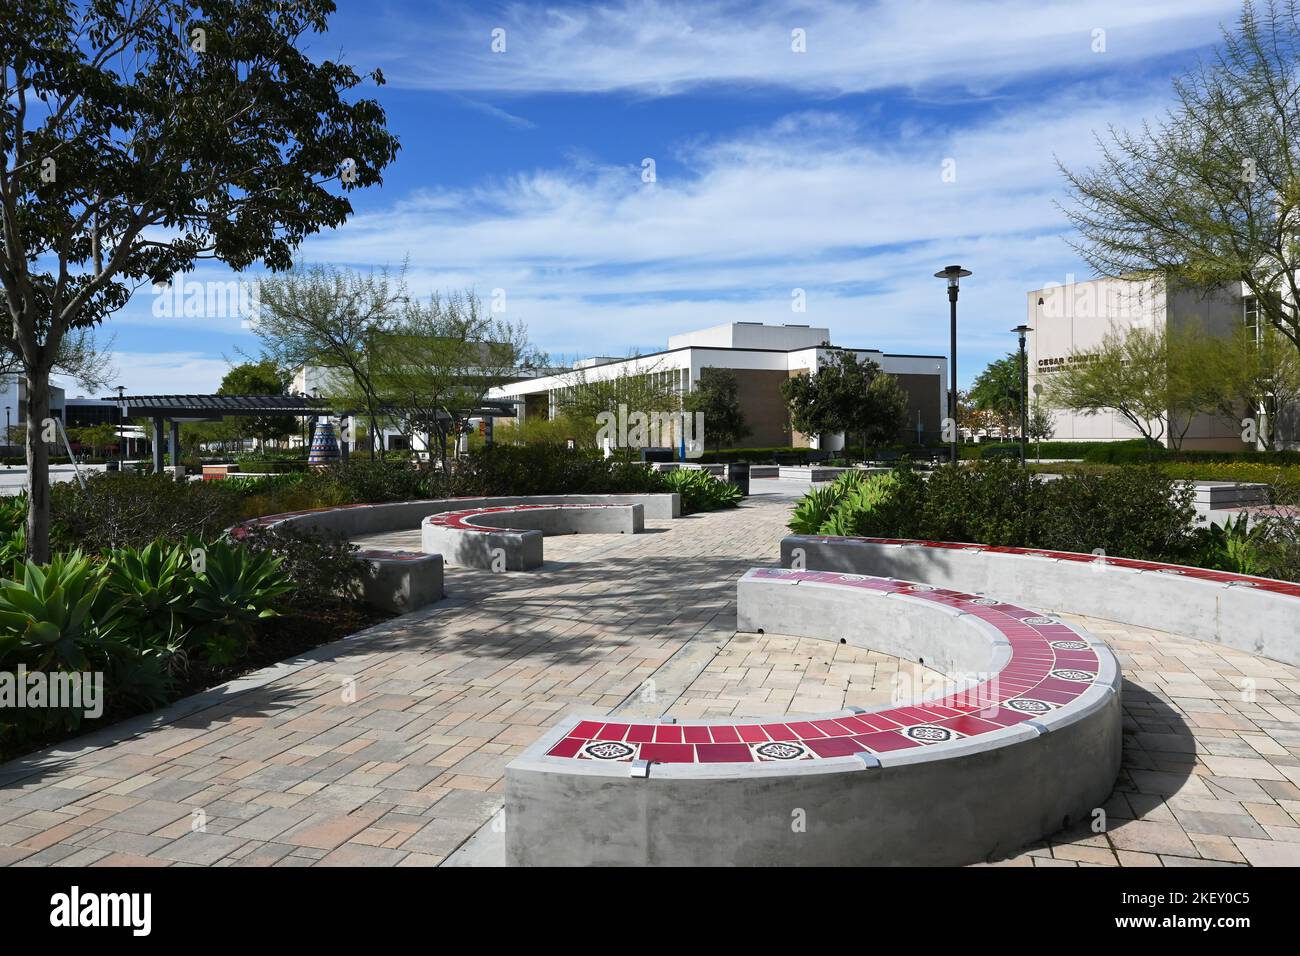 SANTA ANA, KALIFORNIEN - 11. NOV 2022: Quad auf dem Campus des Santa Ana College, mit dem Brunnen, dem Verwaltungsgebäude und dem Chavez Business Center. Stockfoto